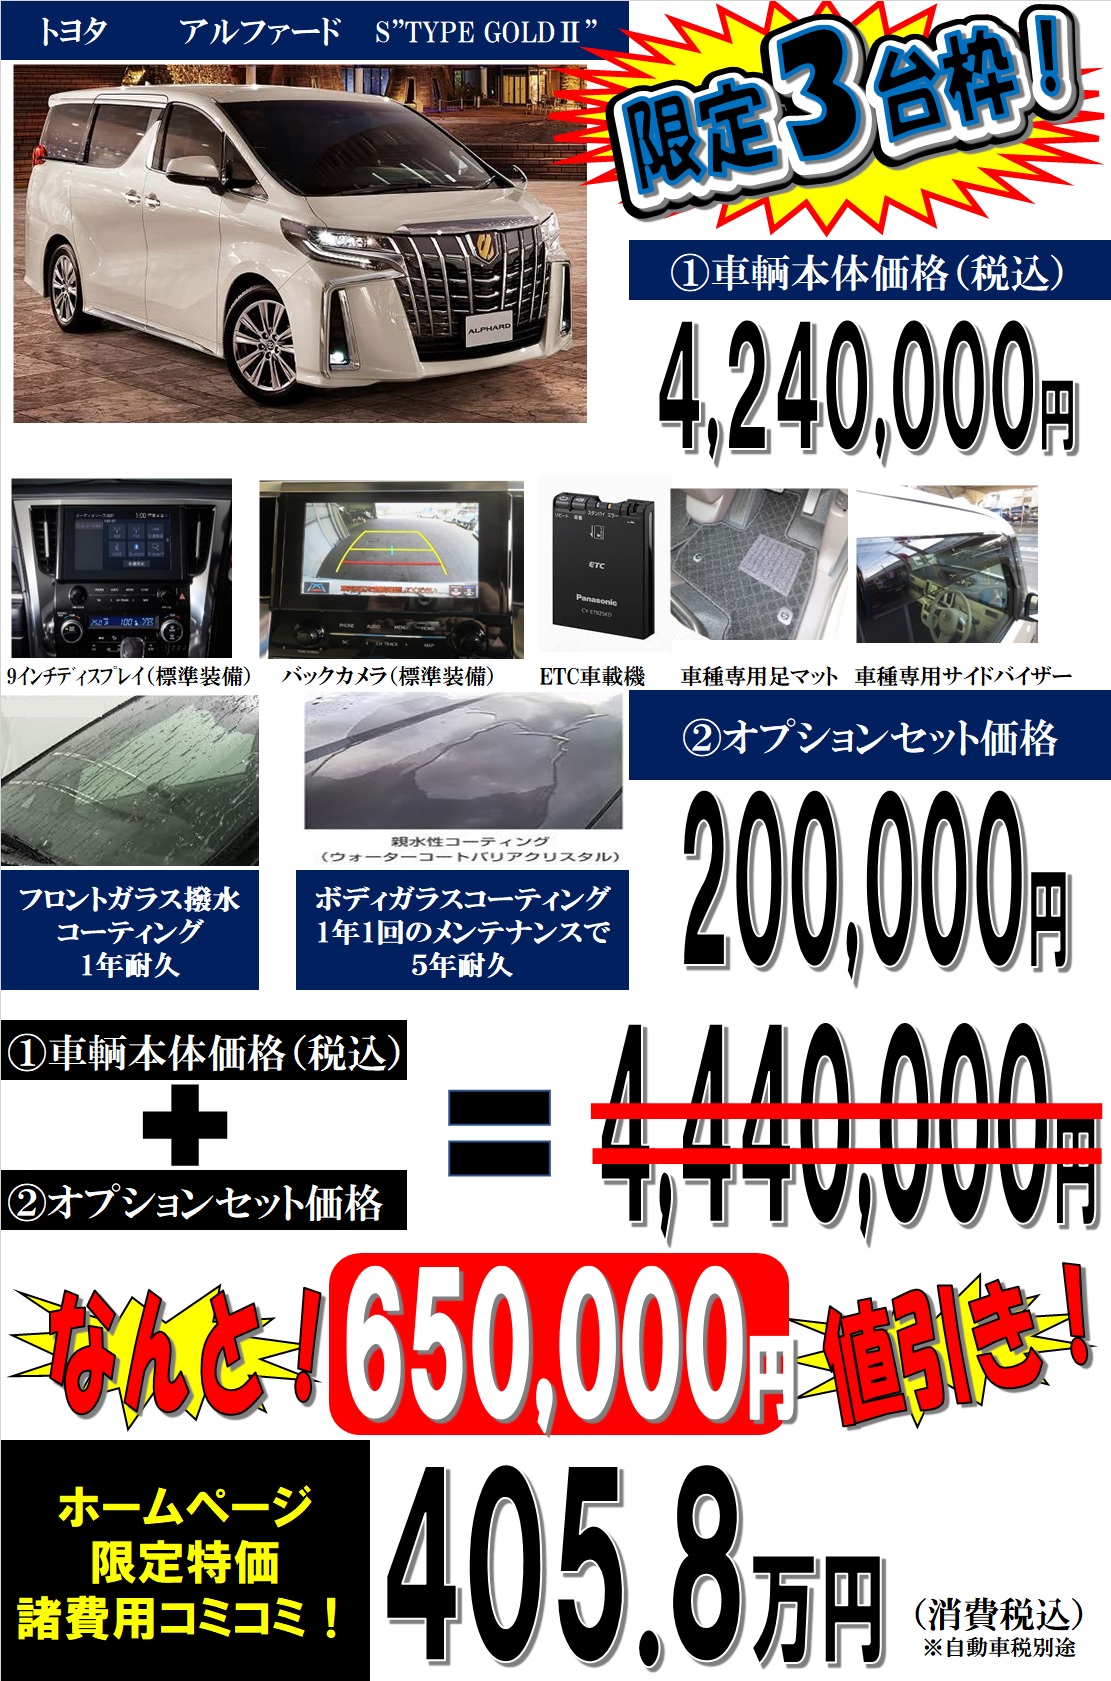 新車 アルファード 特別仕様車 Type Gold 値引きプラン 兵庫県 姫路市 新車が安いネオ